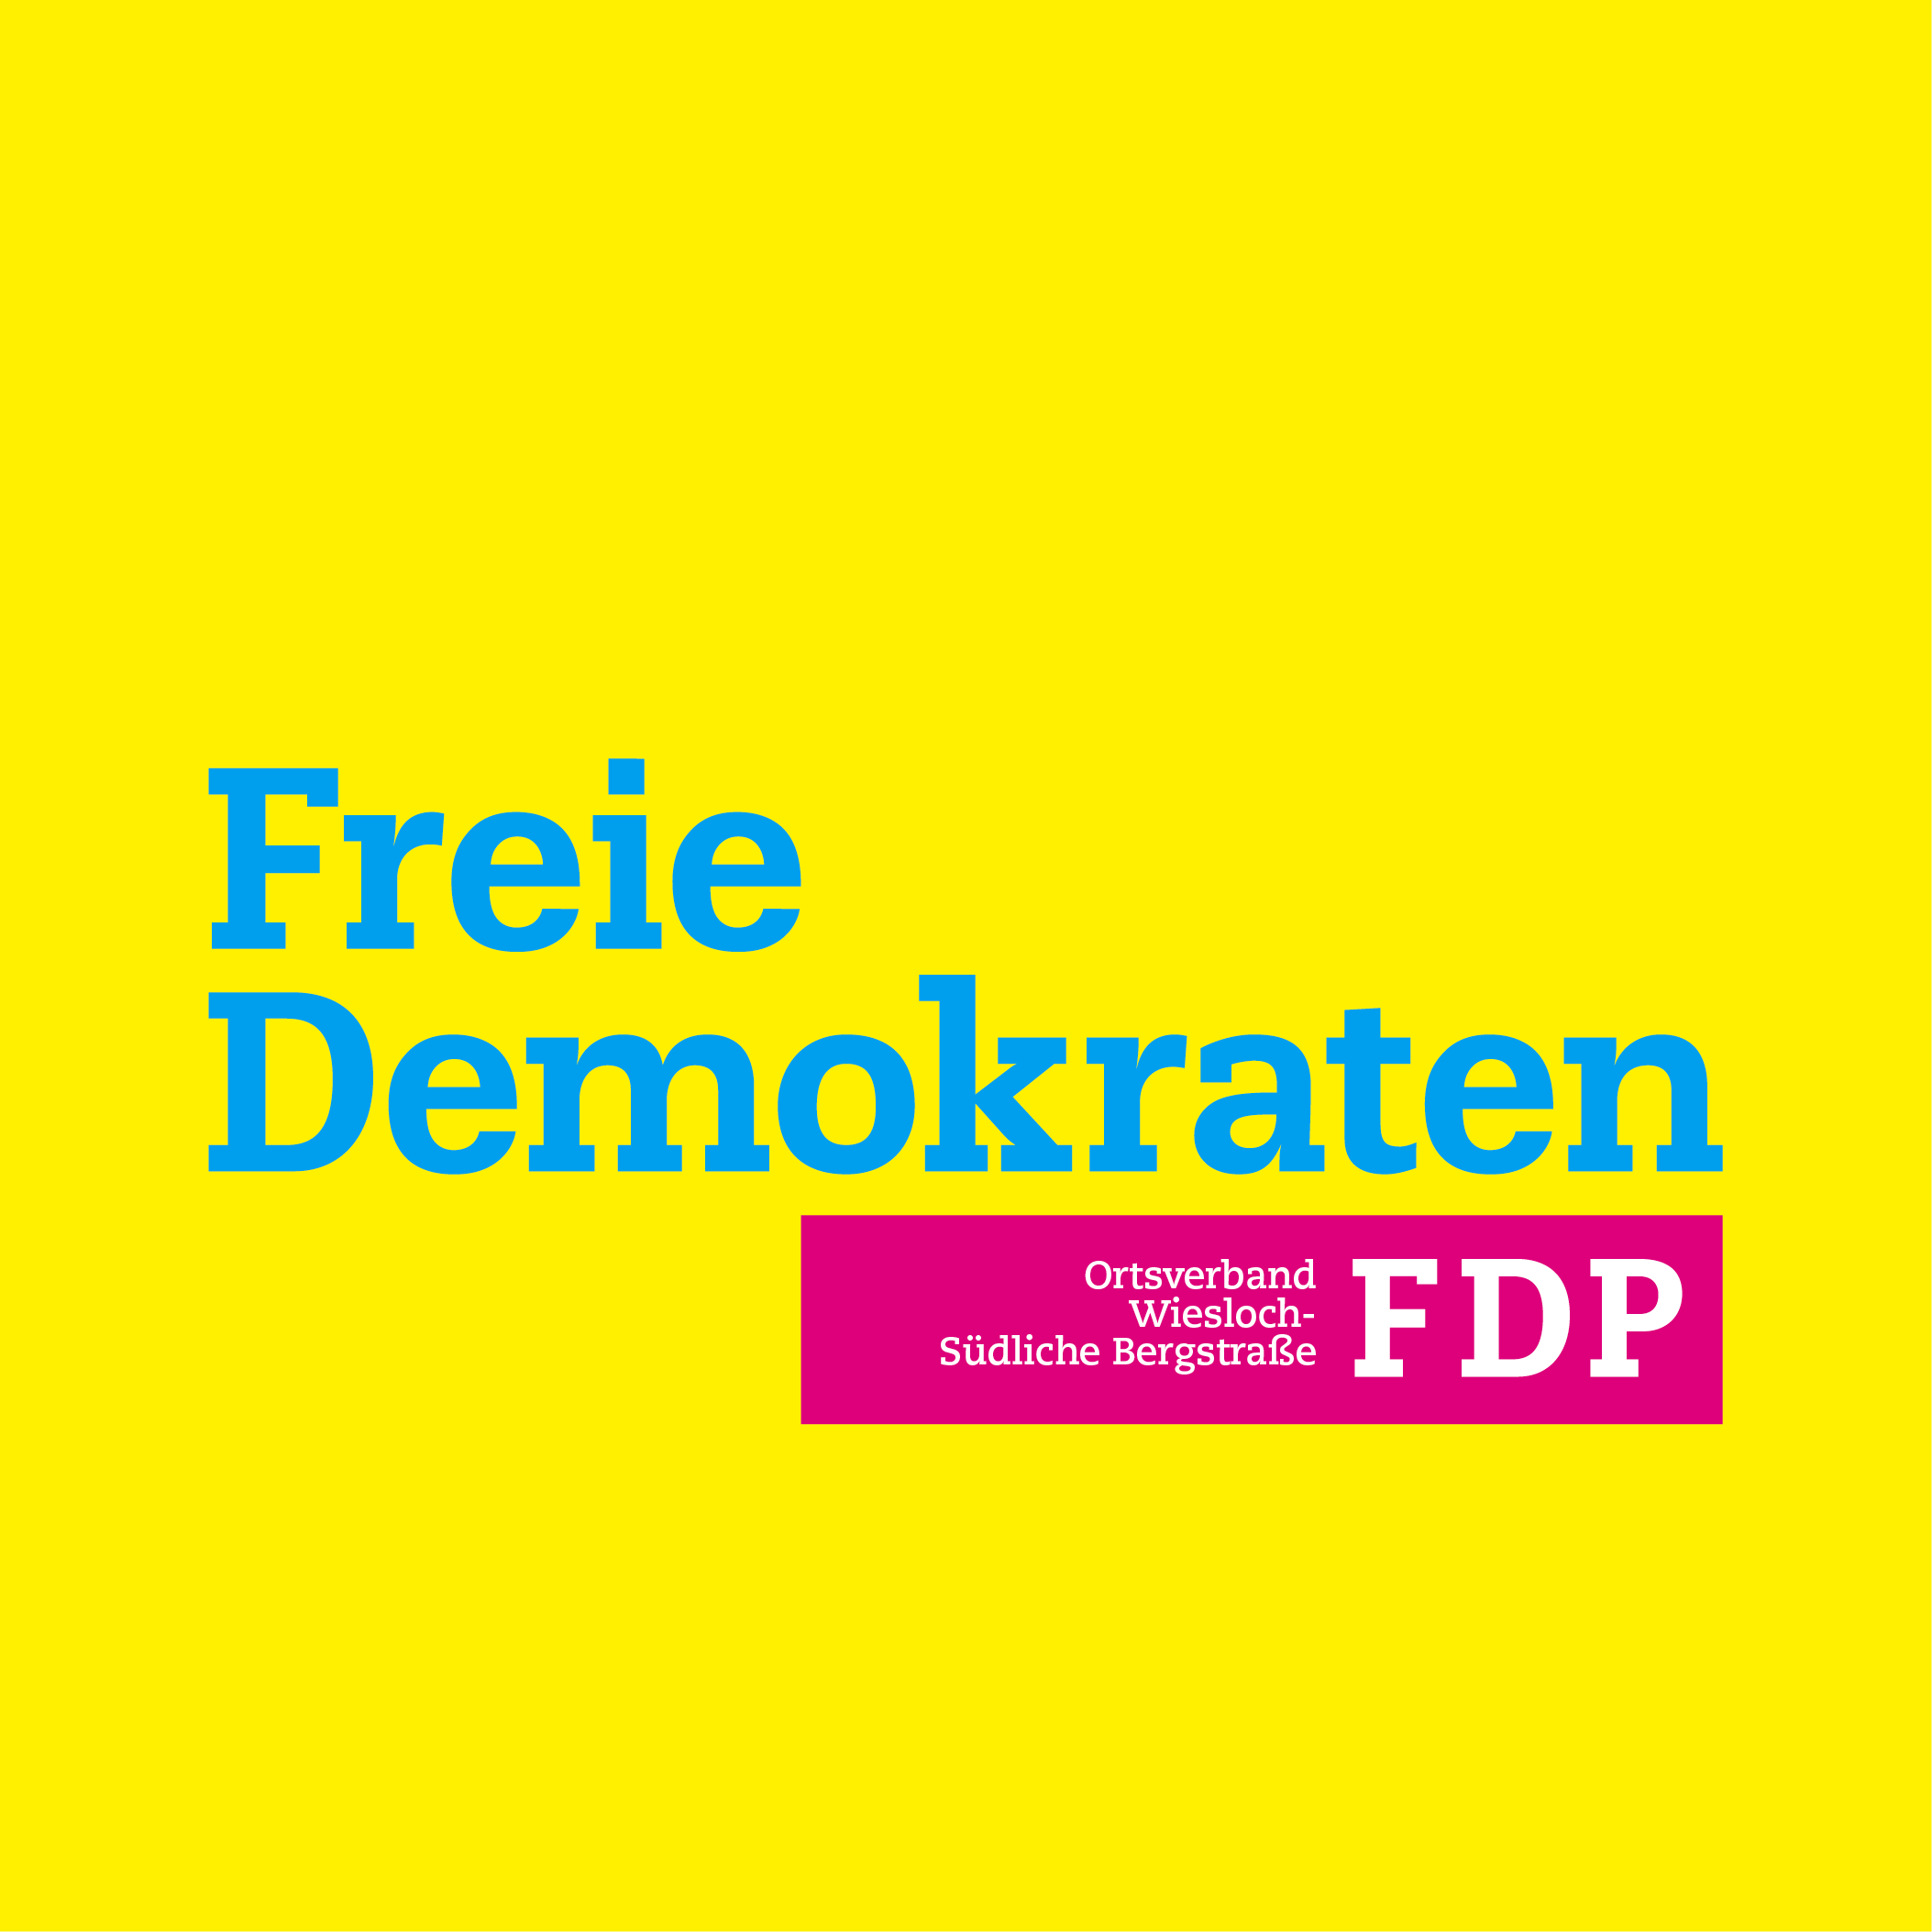 FDP-Kandidaten für Kommunalwahl in Rauenberg